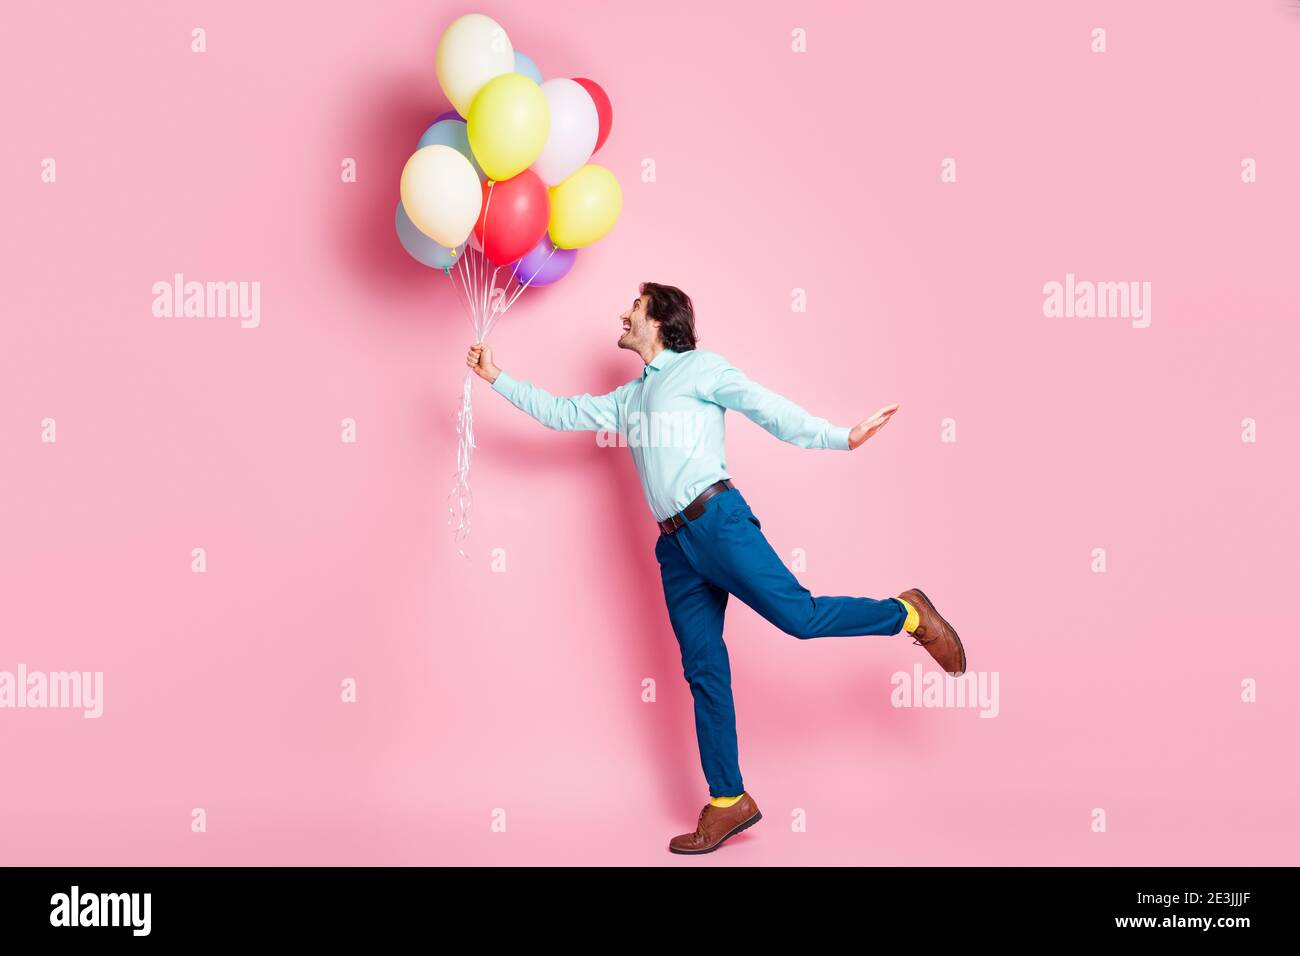 Holding Helium Balloon Stockfotos und -bilder Kaufen - Seite 8 - Alamy